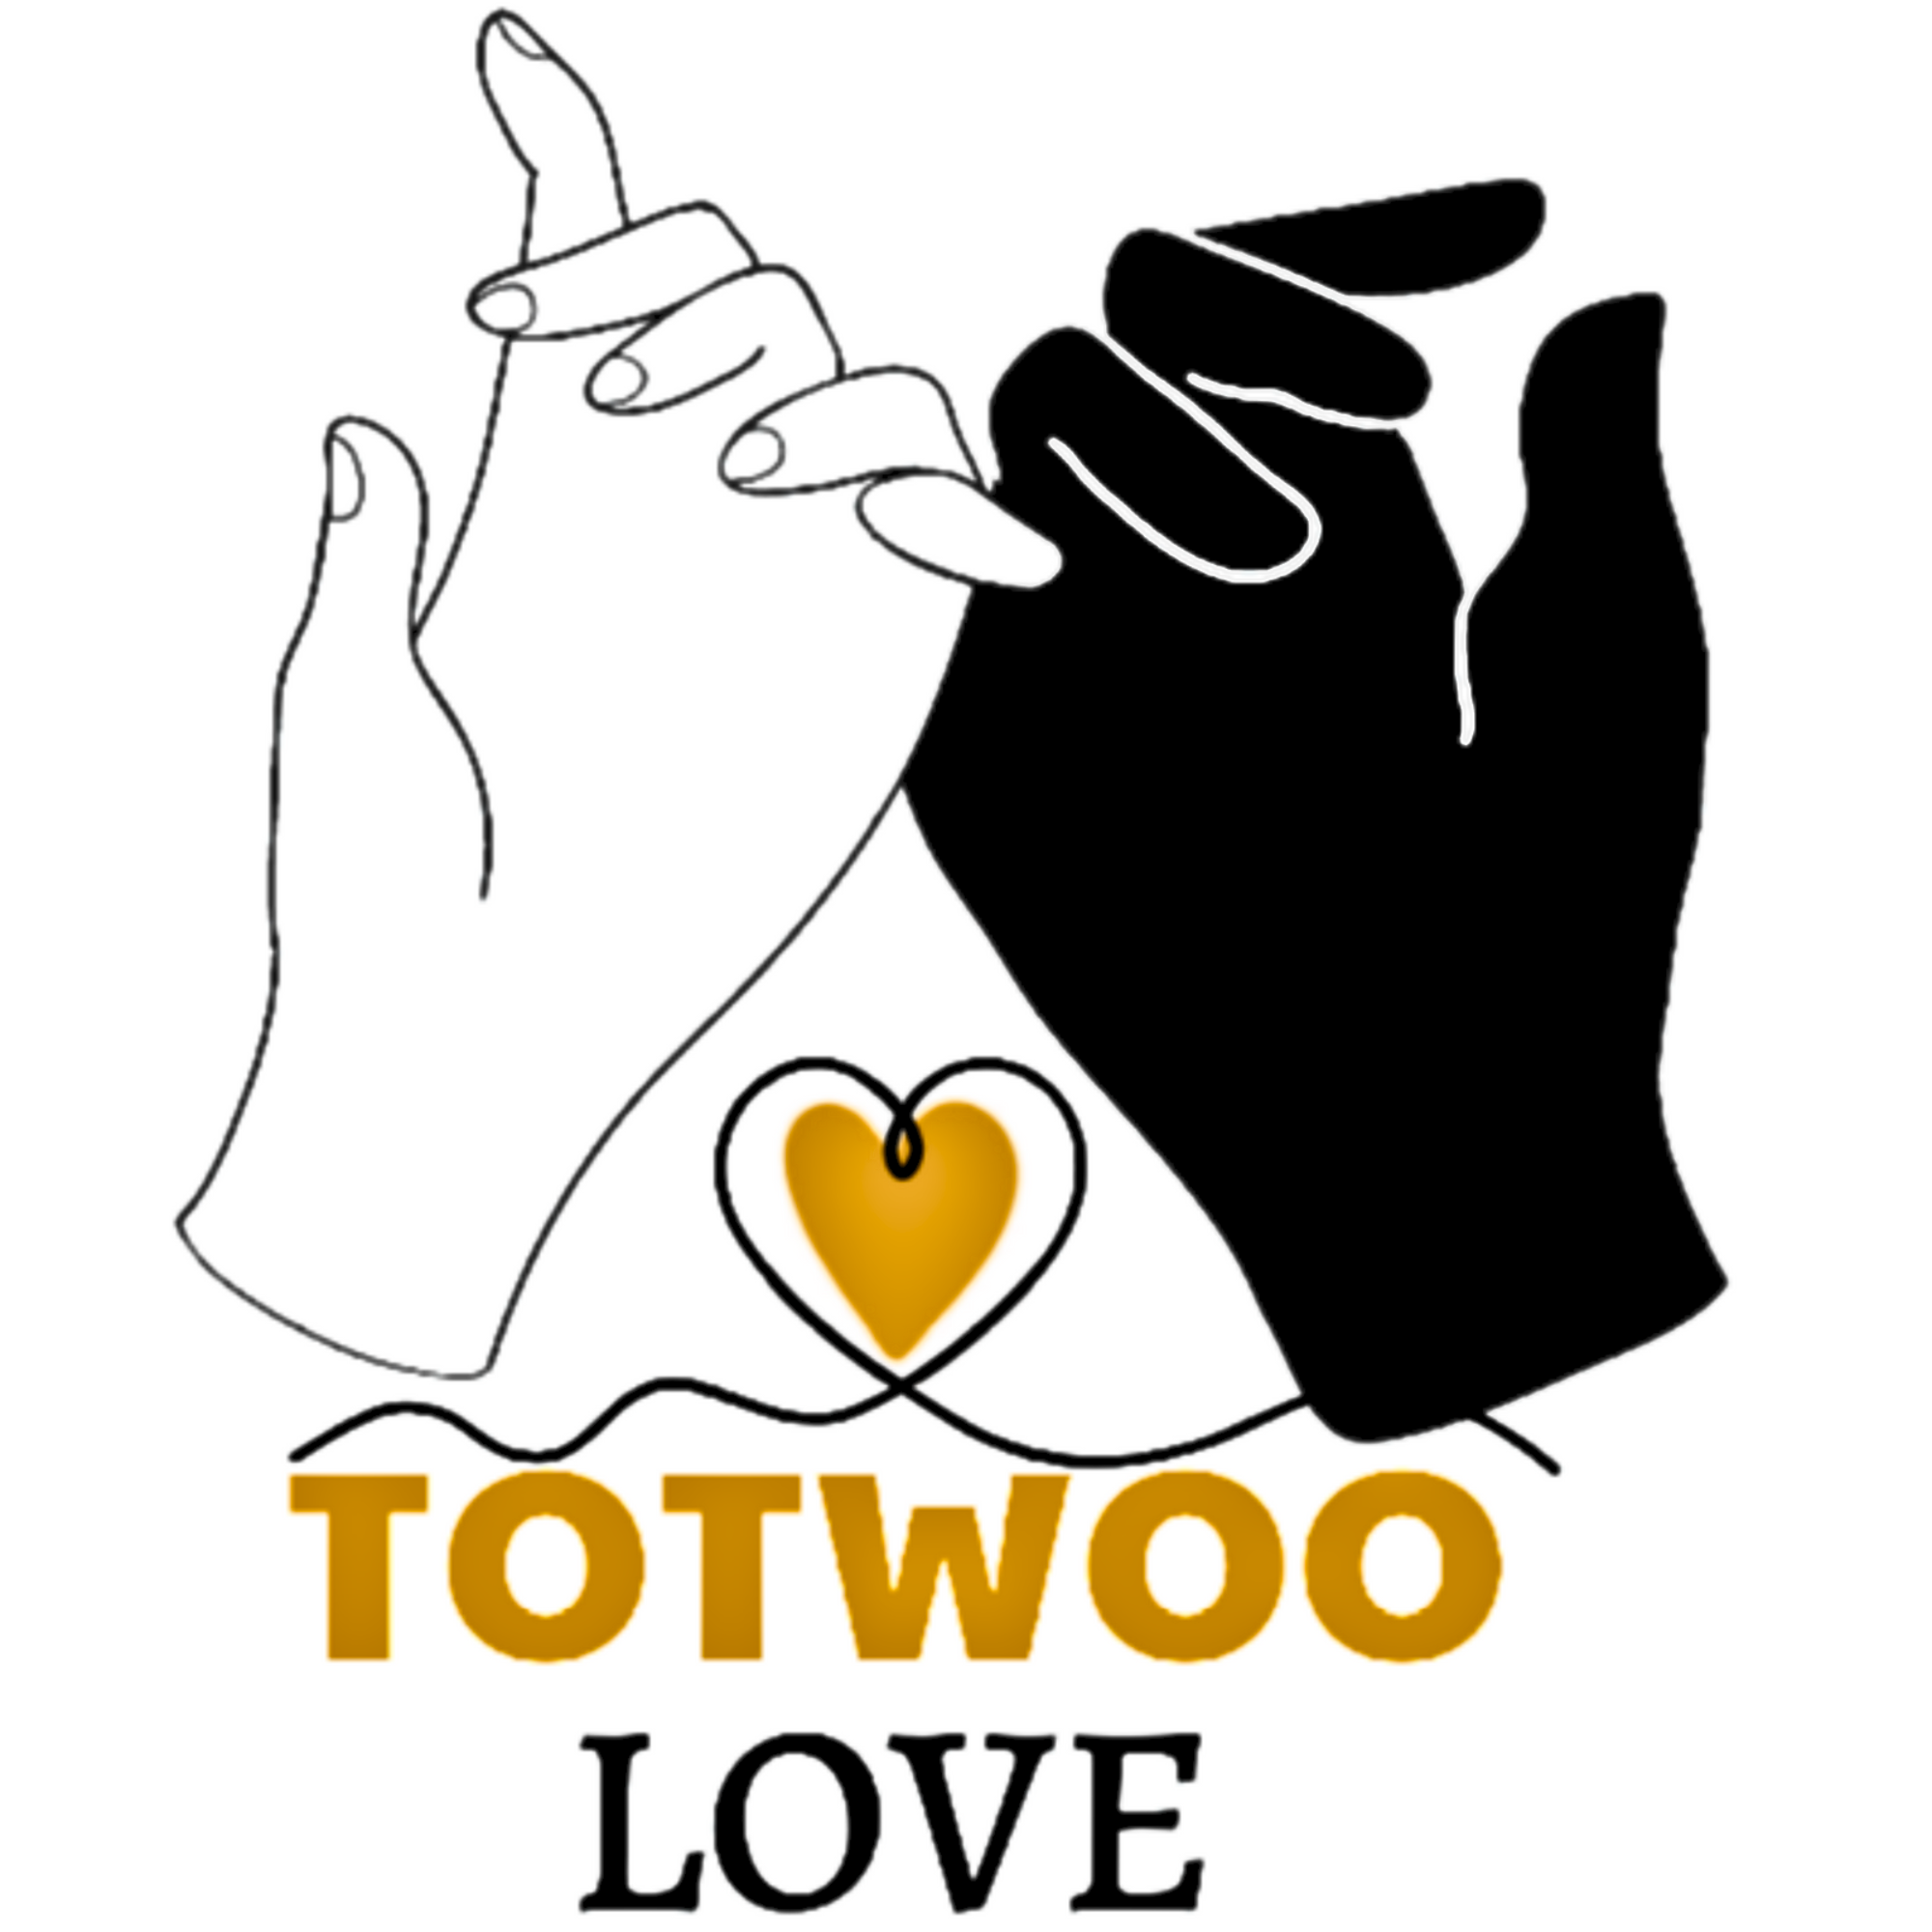 Totwoo Love 